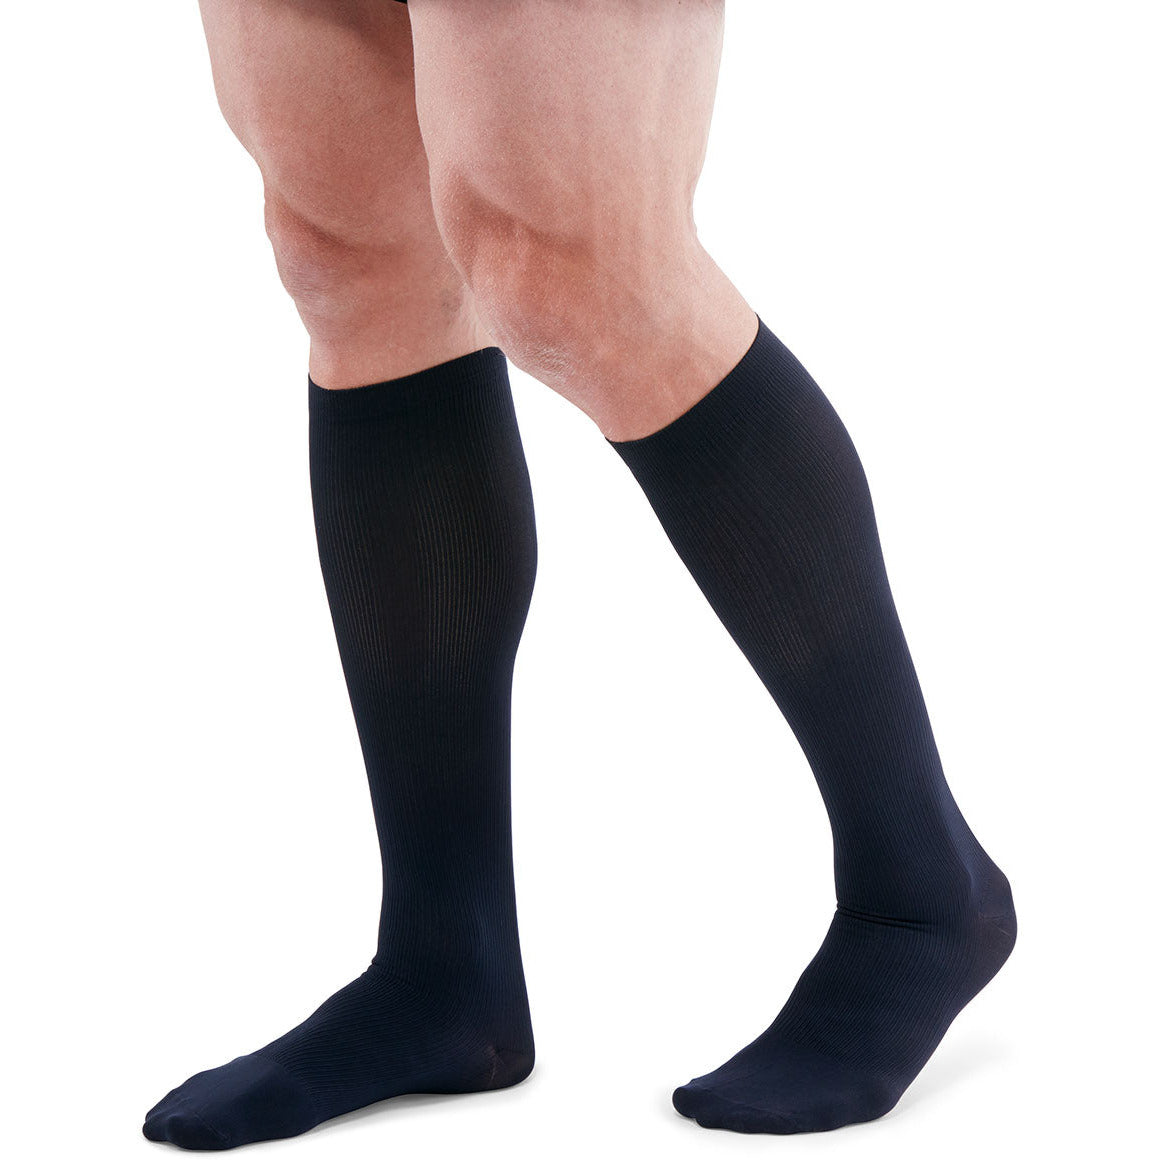 mediven men classic 8-15 mmHg calf closed toe standard